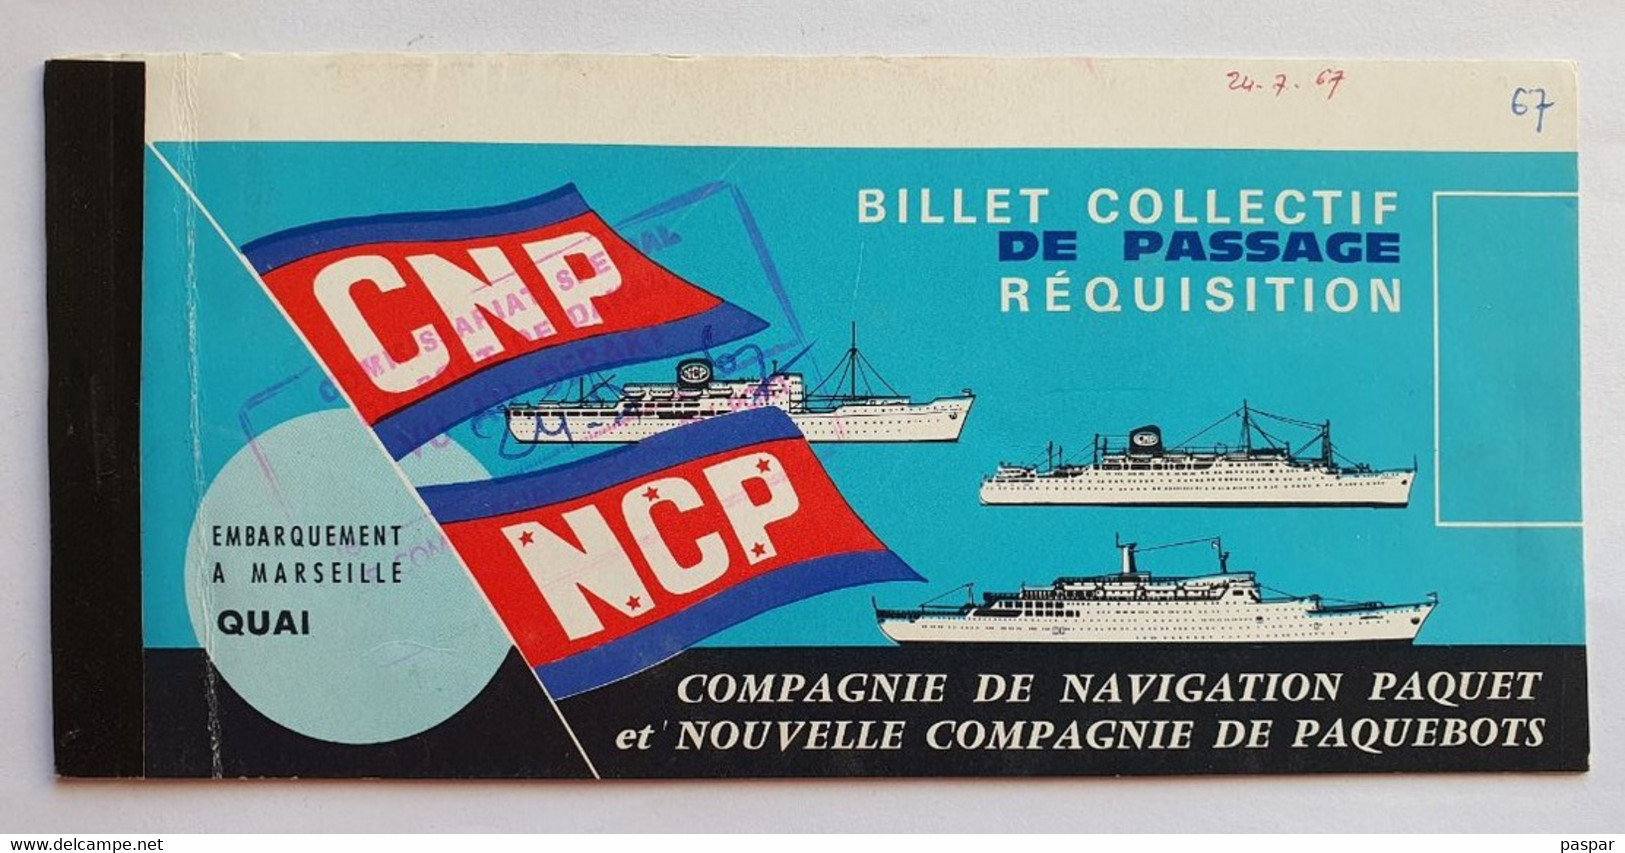 COMPAGNIE DE NAVIGATION PAQUET - Billet De Passage Réquisition DAKAR MARSEILLE - Ancerville - 1967 - Wereld